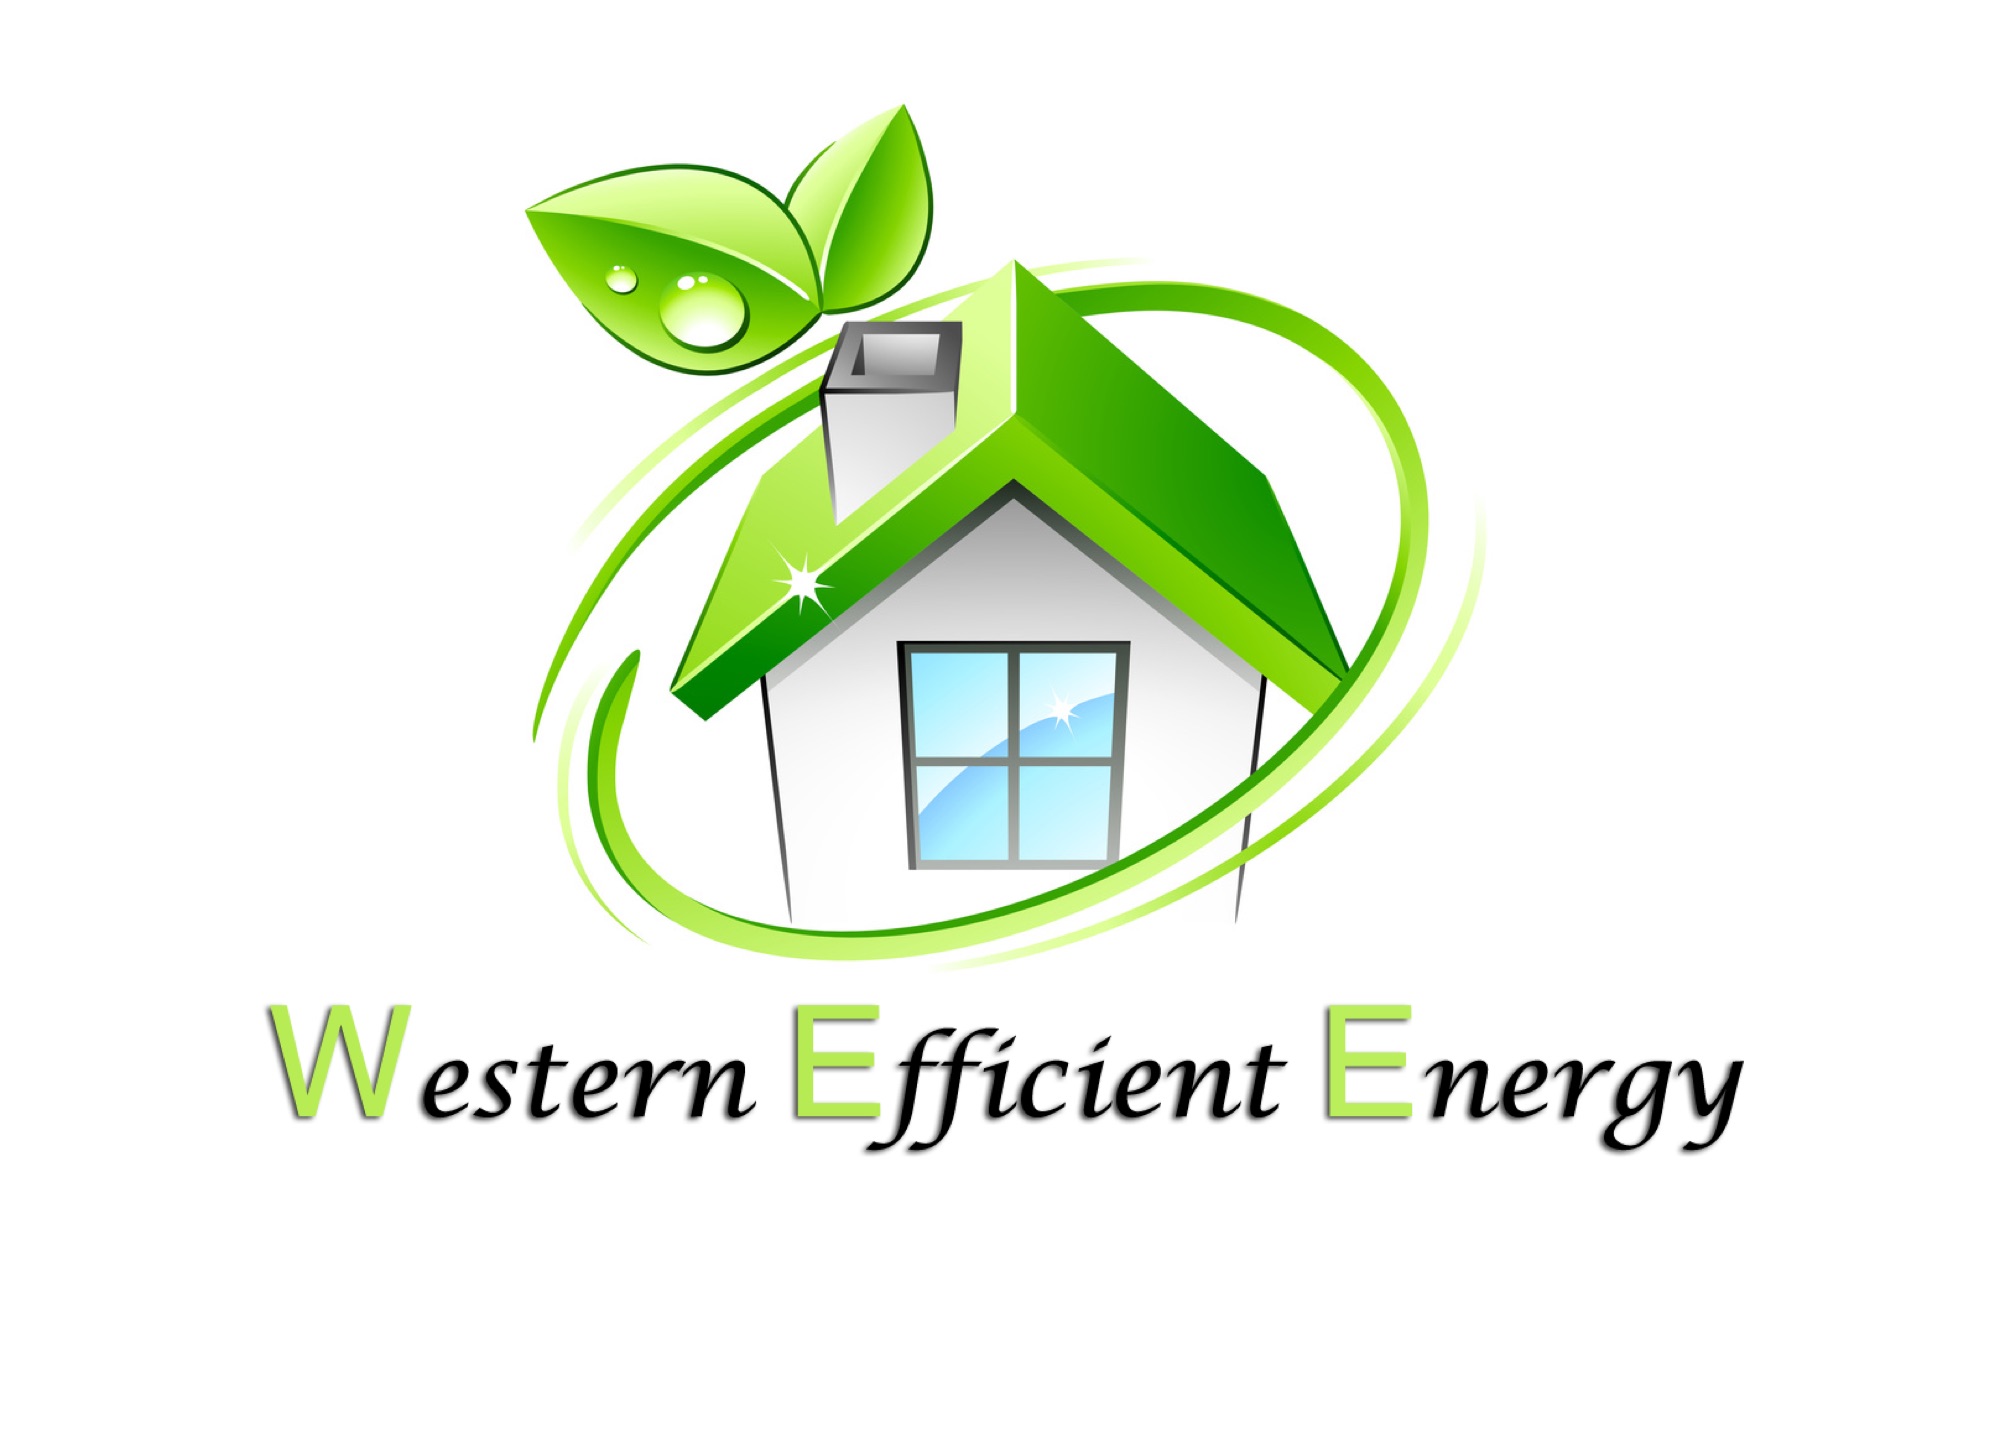 Western Tech Logo